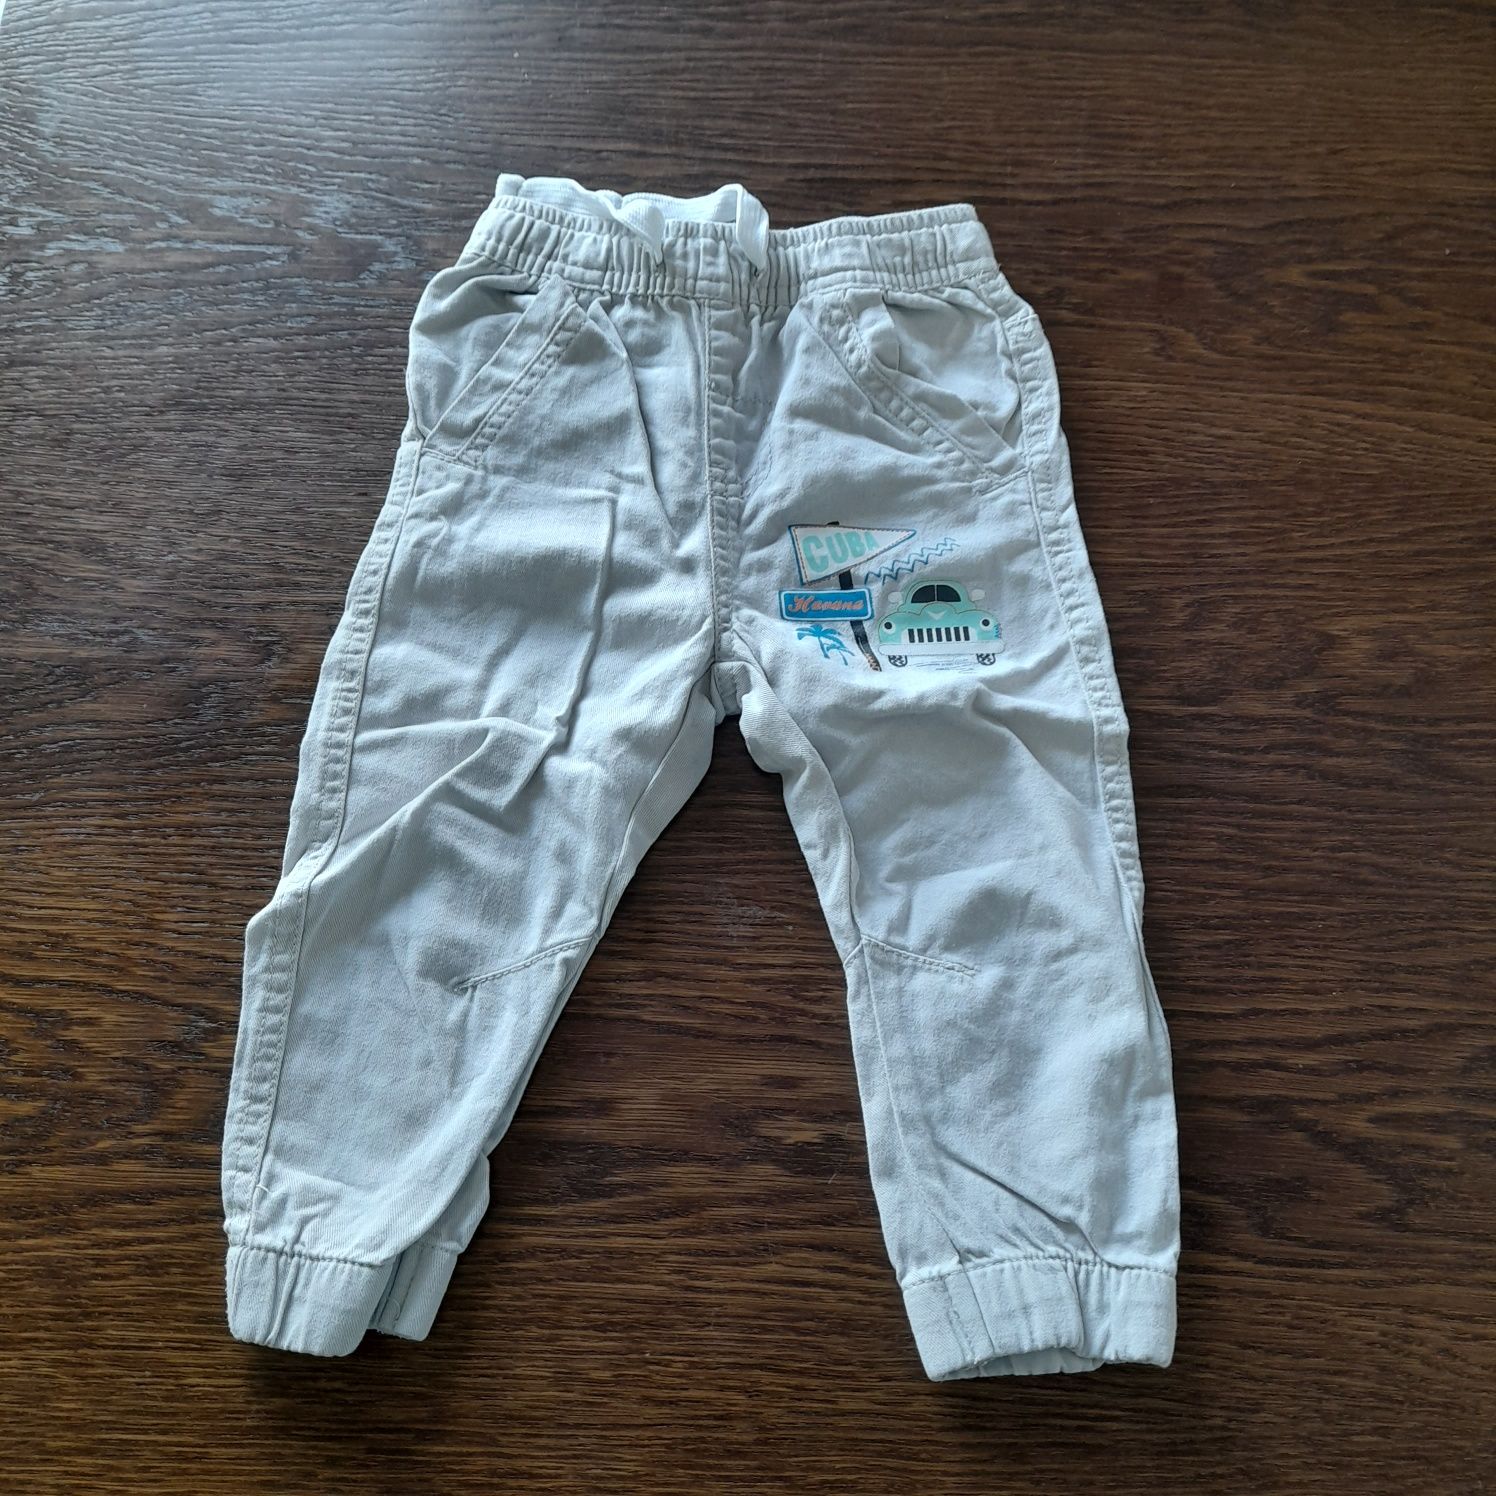 Paka/zestaw: 4 sztuki spodni (2 z opcją skrócenia nogawki) dla chłopca